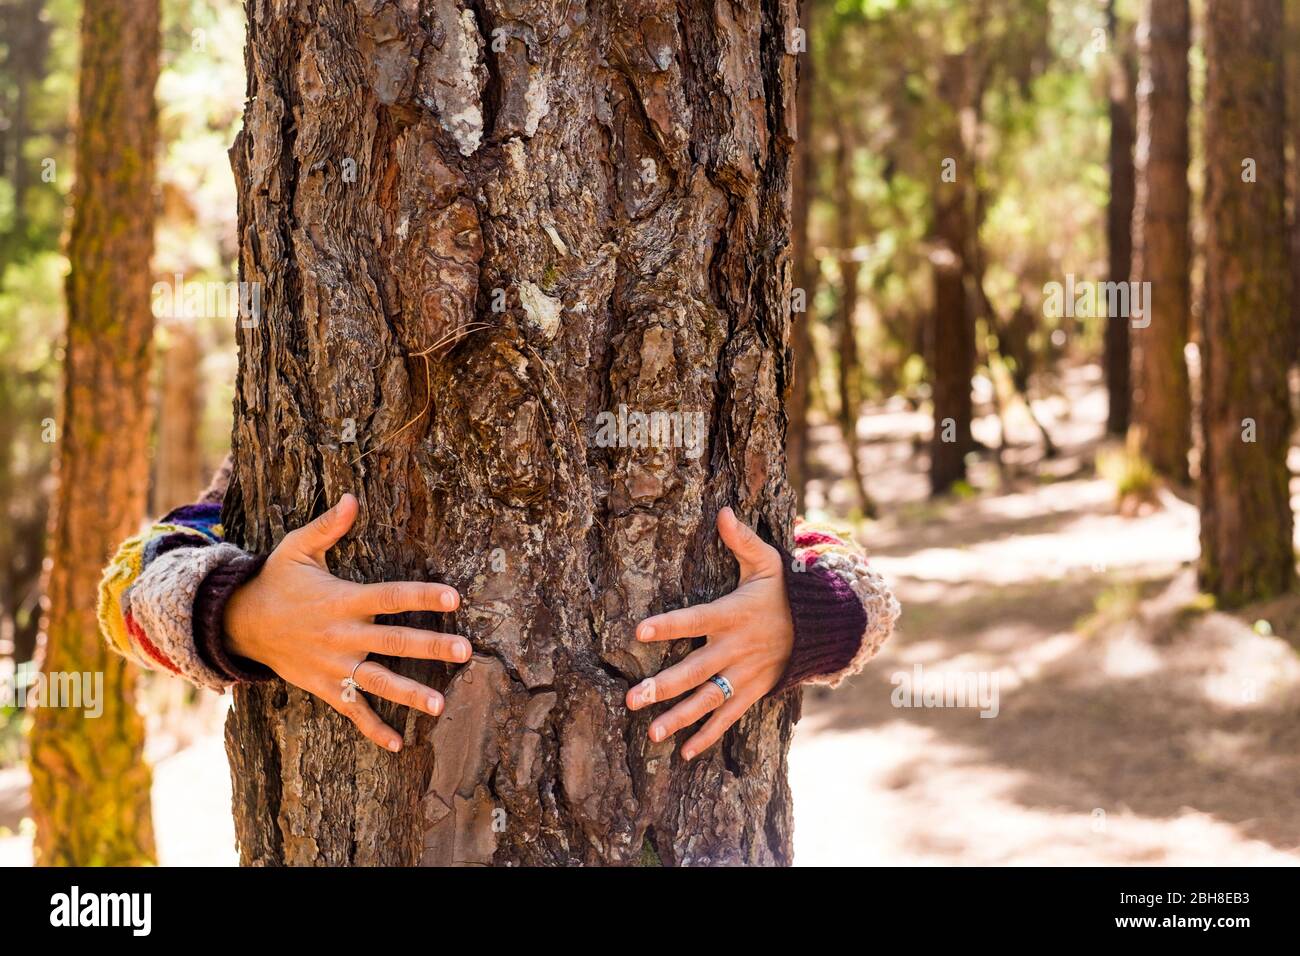 le mani della donna abbracciano un pino nella foresta per amore e sensibilità della natura e la cura e il concetto di rispetto - nessun inquinamento e stile di vita alternativo di piacere esterno - felicità e contatto con la madre terra Foto Stock